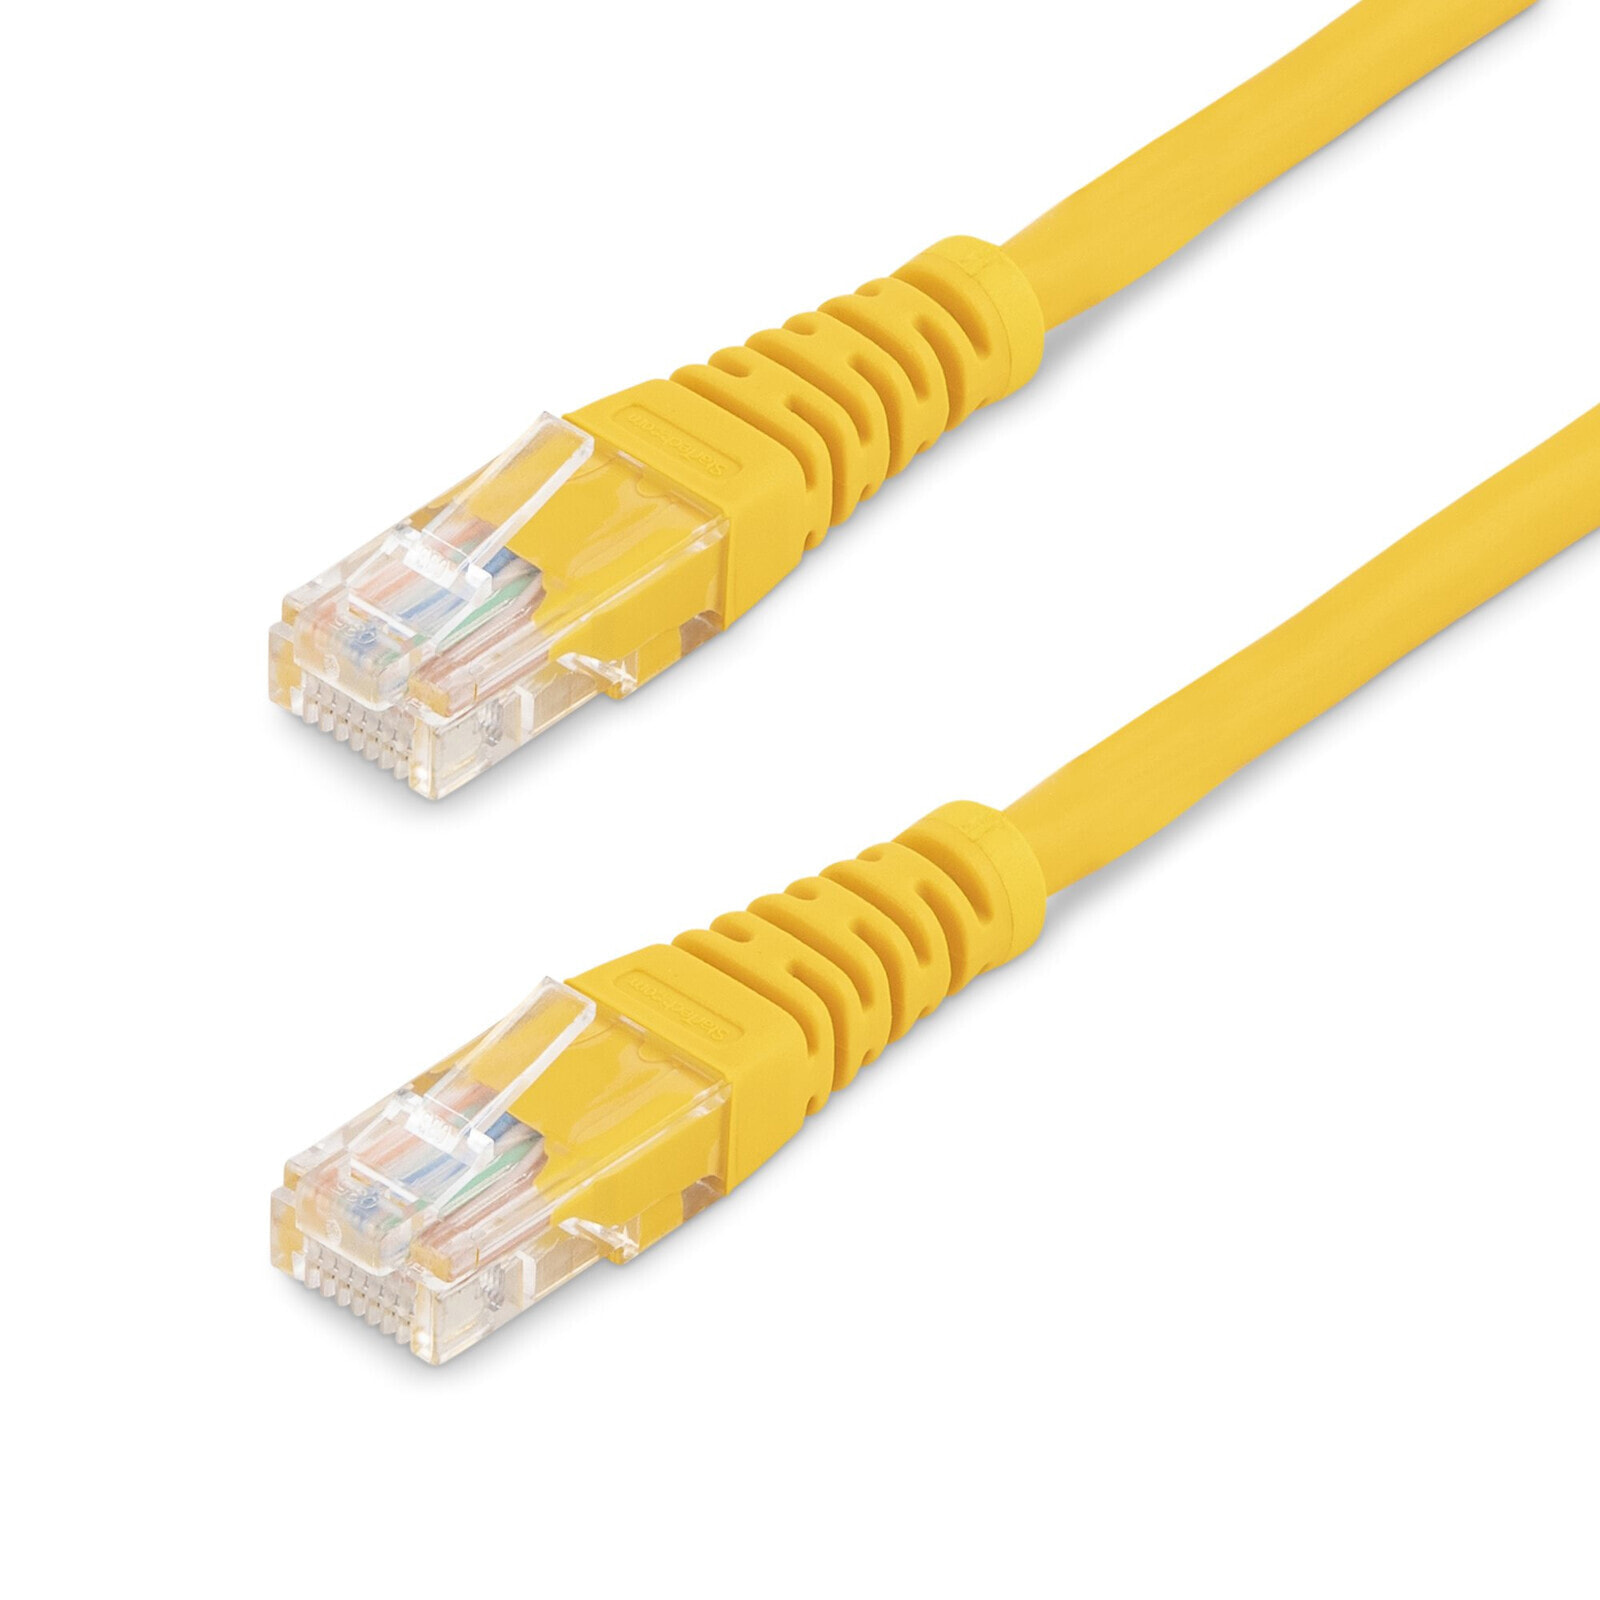 Cat5e Patch Cable with Molded RJ45 Connectors - 1 ft. - Yellow - 0.3 m - Cat5e - U/UTP (UTP) - RJ-45 - RJ-45